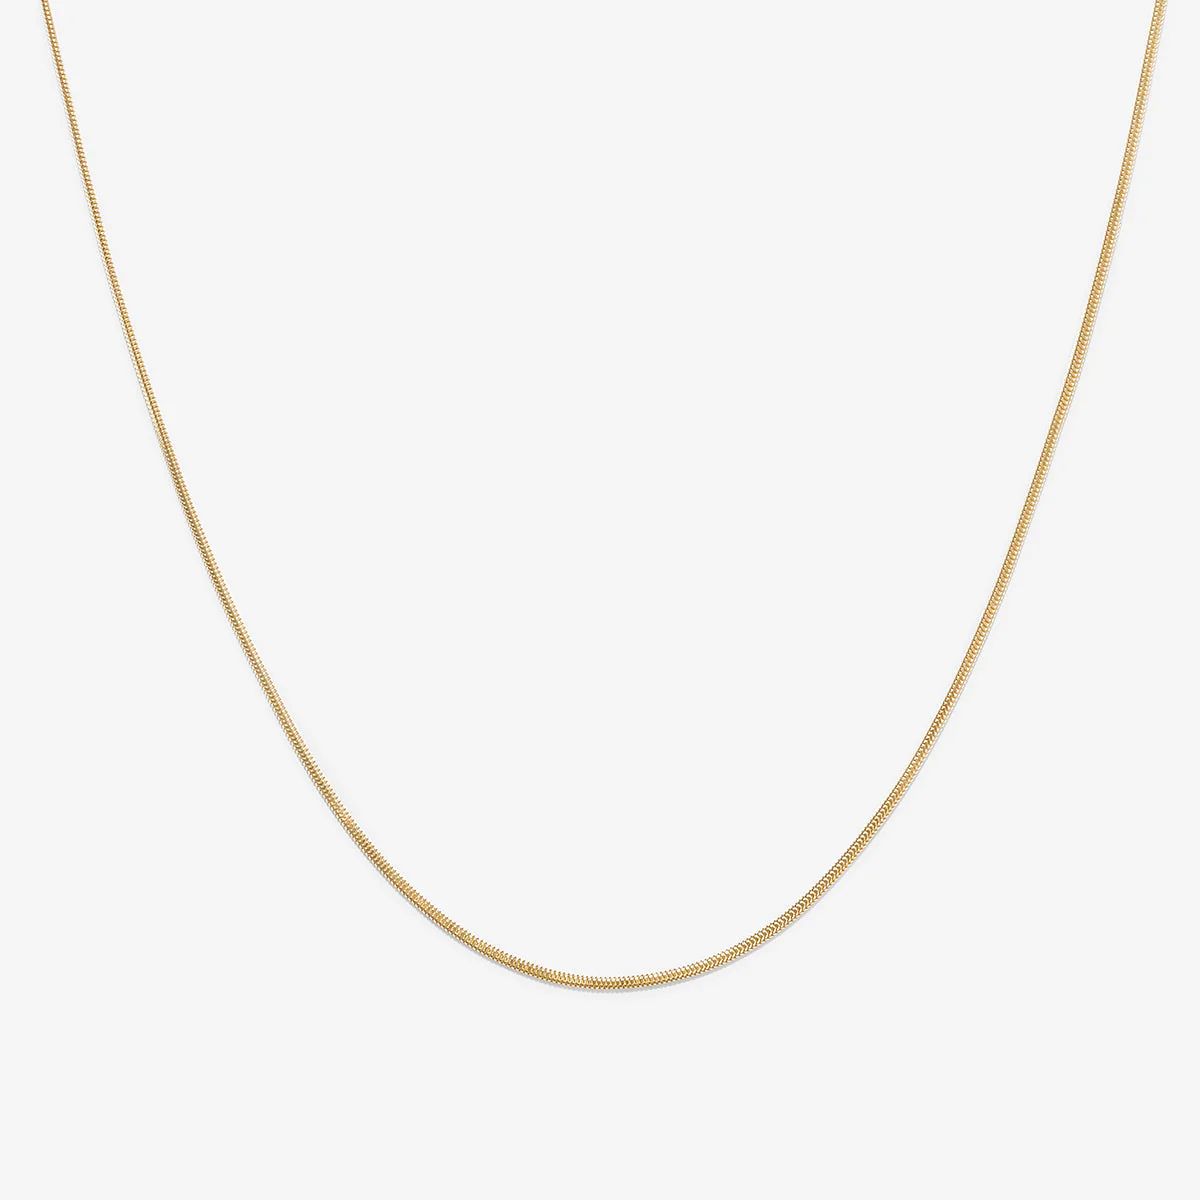 Henio snake chain necklace | Adornmonde